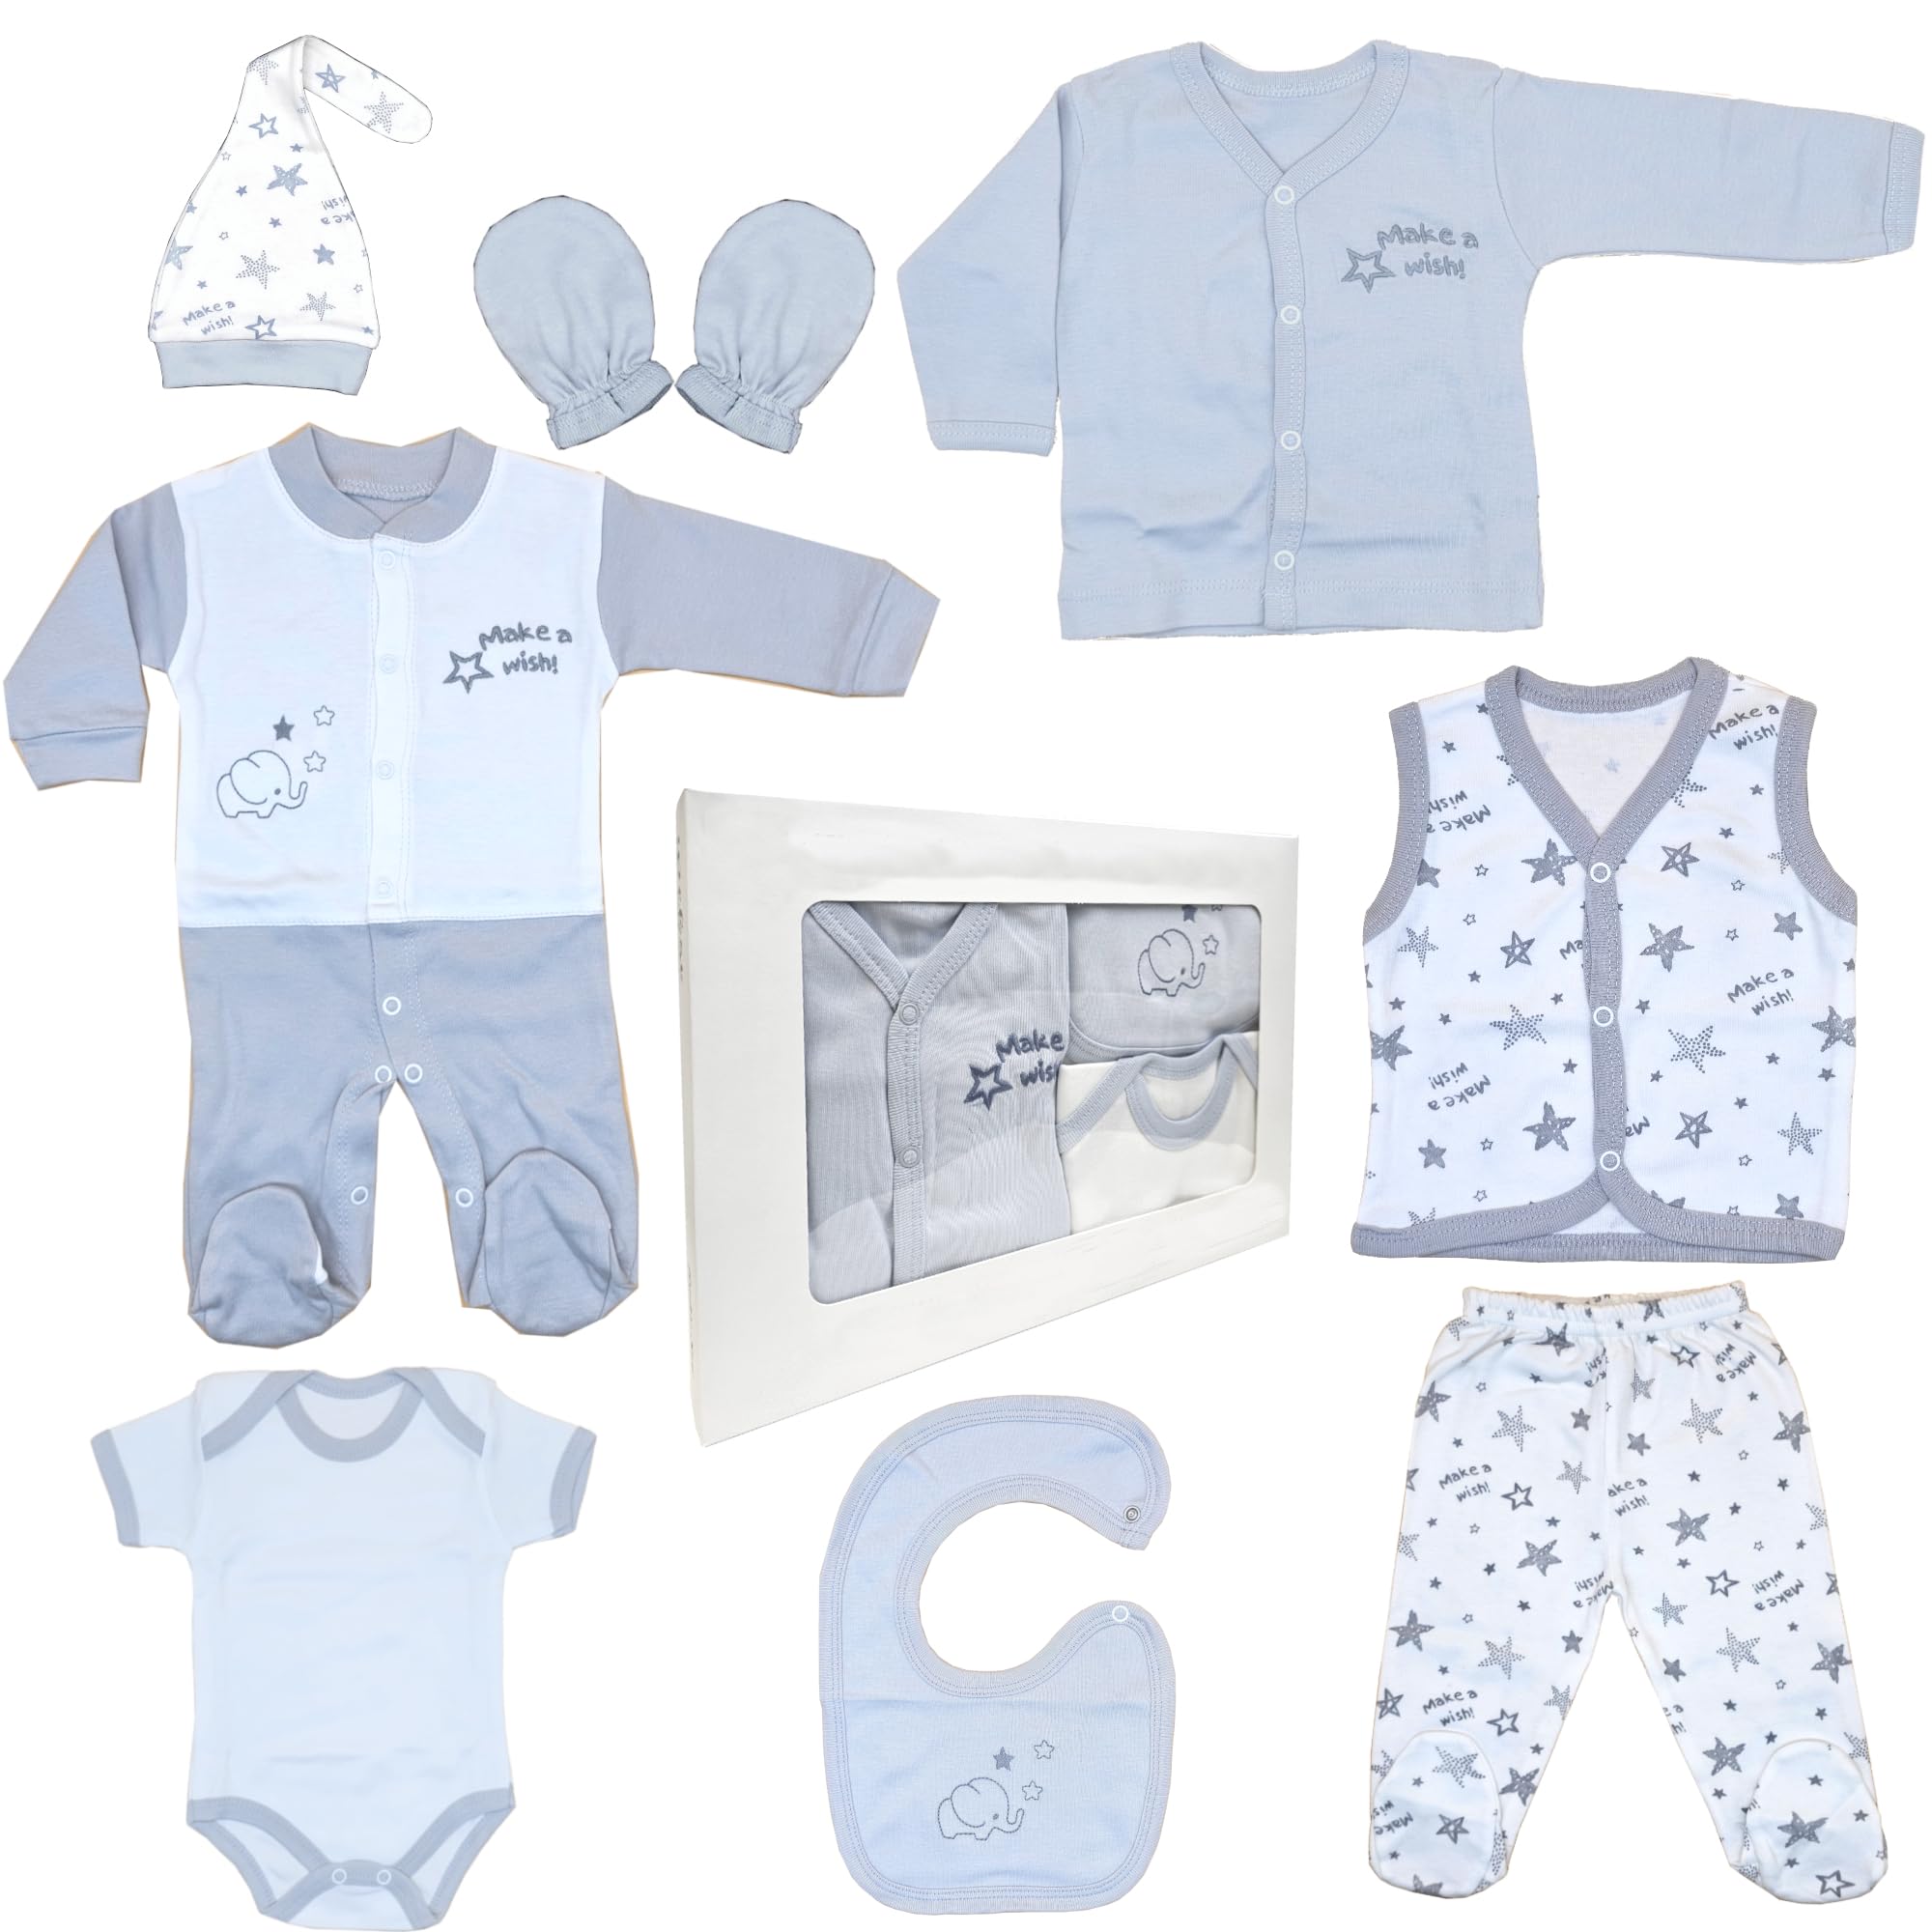 Blue Eyes Neugeborenen Baby Geschenk Set 100% natürliche Baumwolle Erstausstattung Ausstattung Unisex Kleidung Geschenkset Babyausstattung für Babys 0-4 Monate 8 teilig (Stern-Grau)